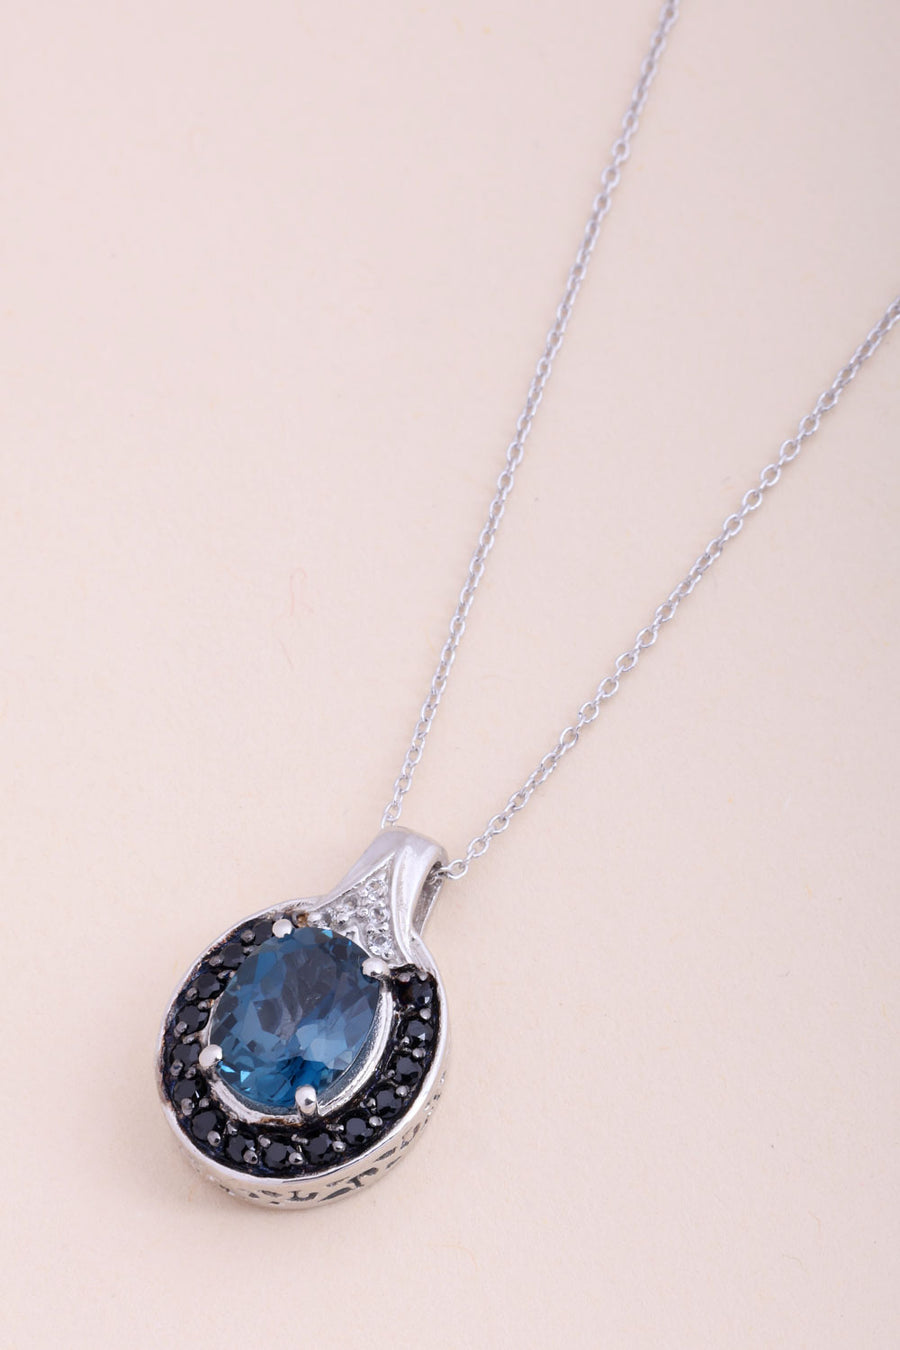 Blue Topaz Sterling Silver Pendant Necklace 10067163 - Avishya